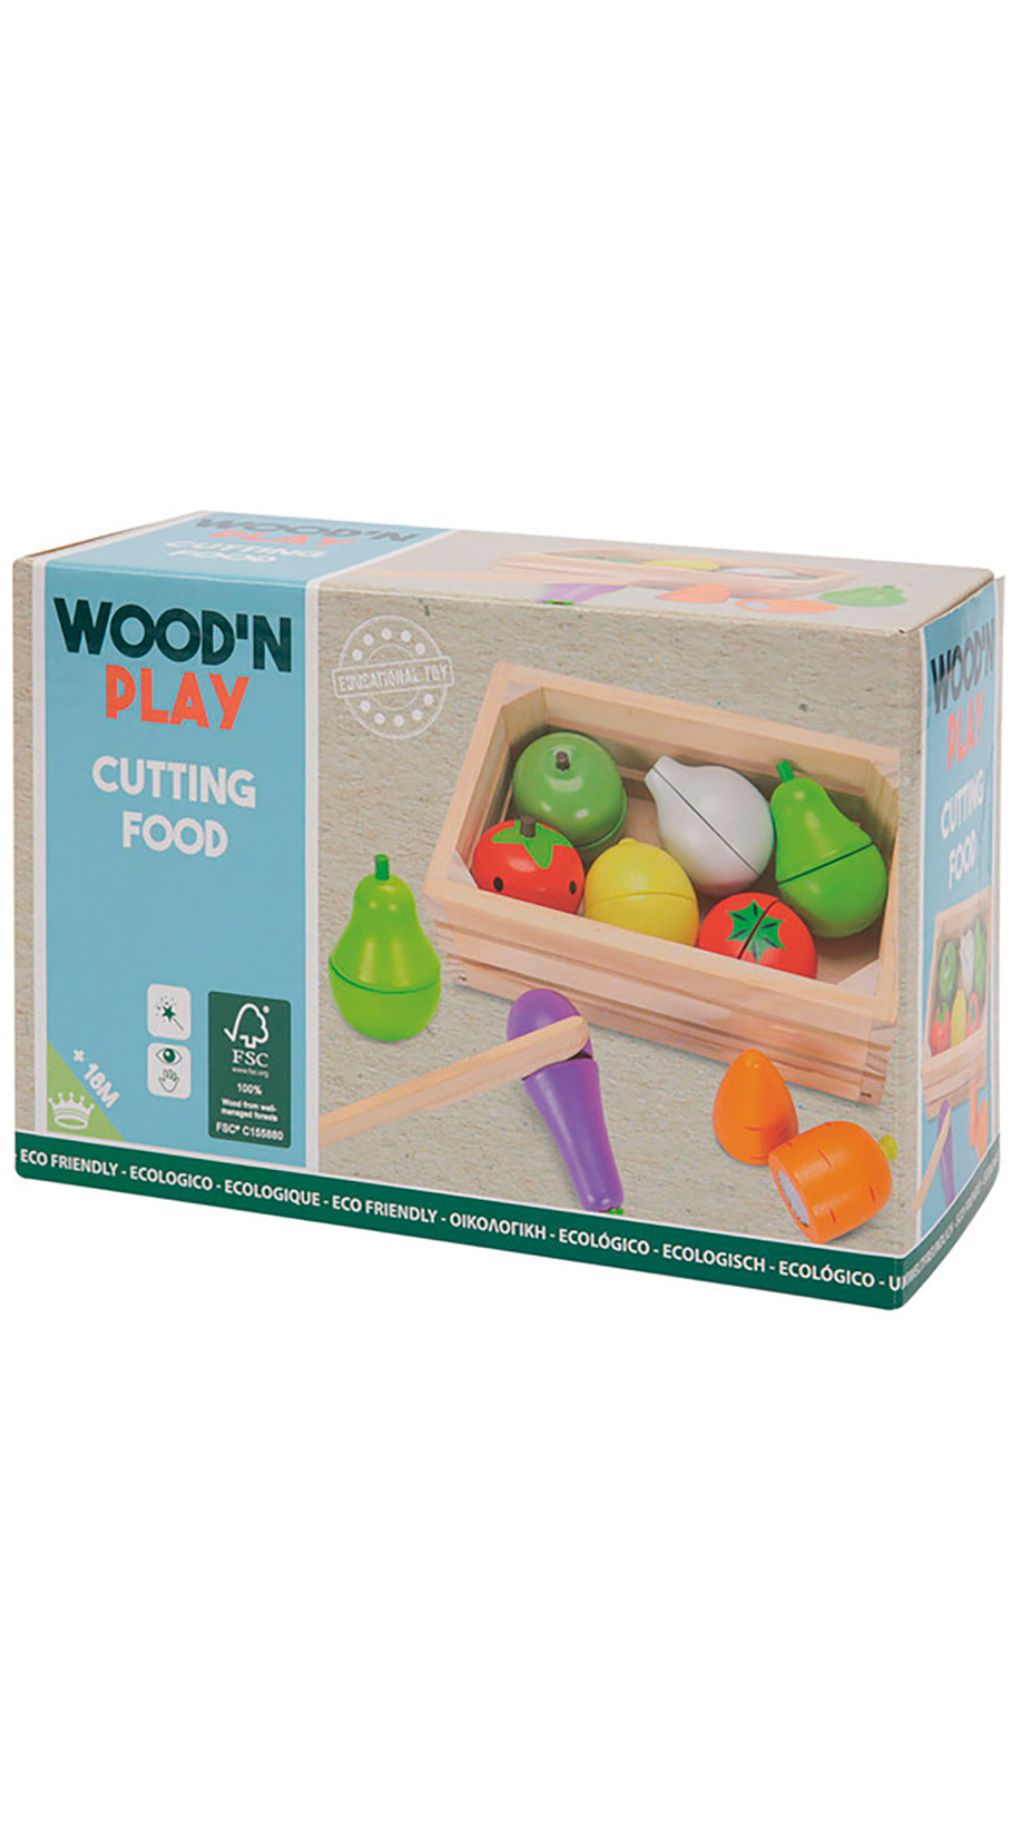 Wood' n play φρούτα και λαχανικά για κόψιμο - WOOD N'PLAY